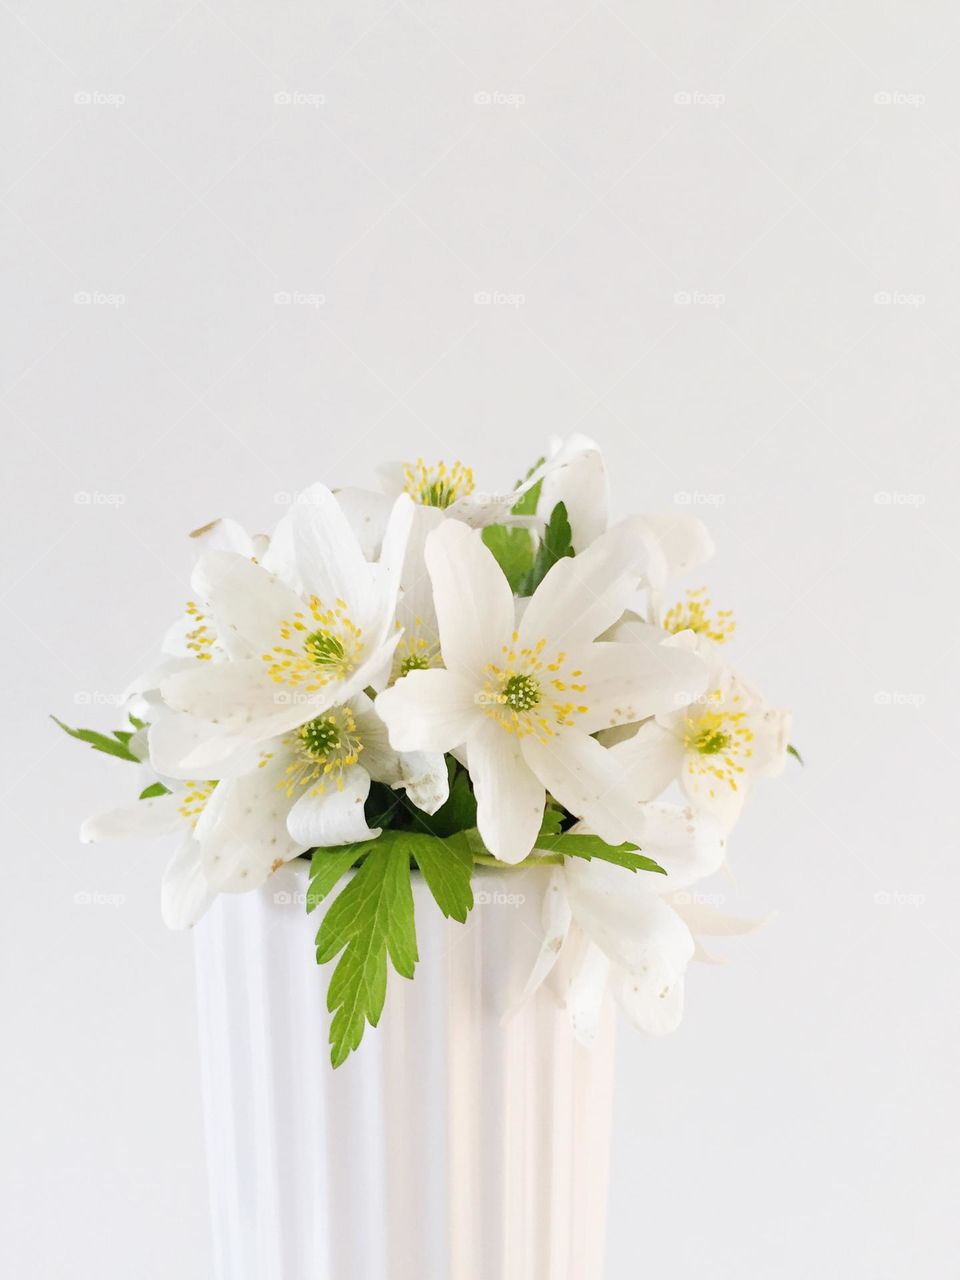 White flowers in vase